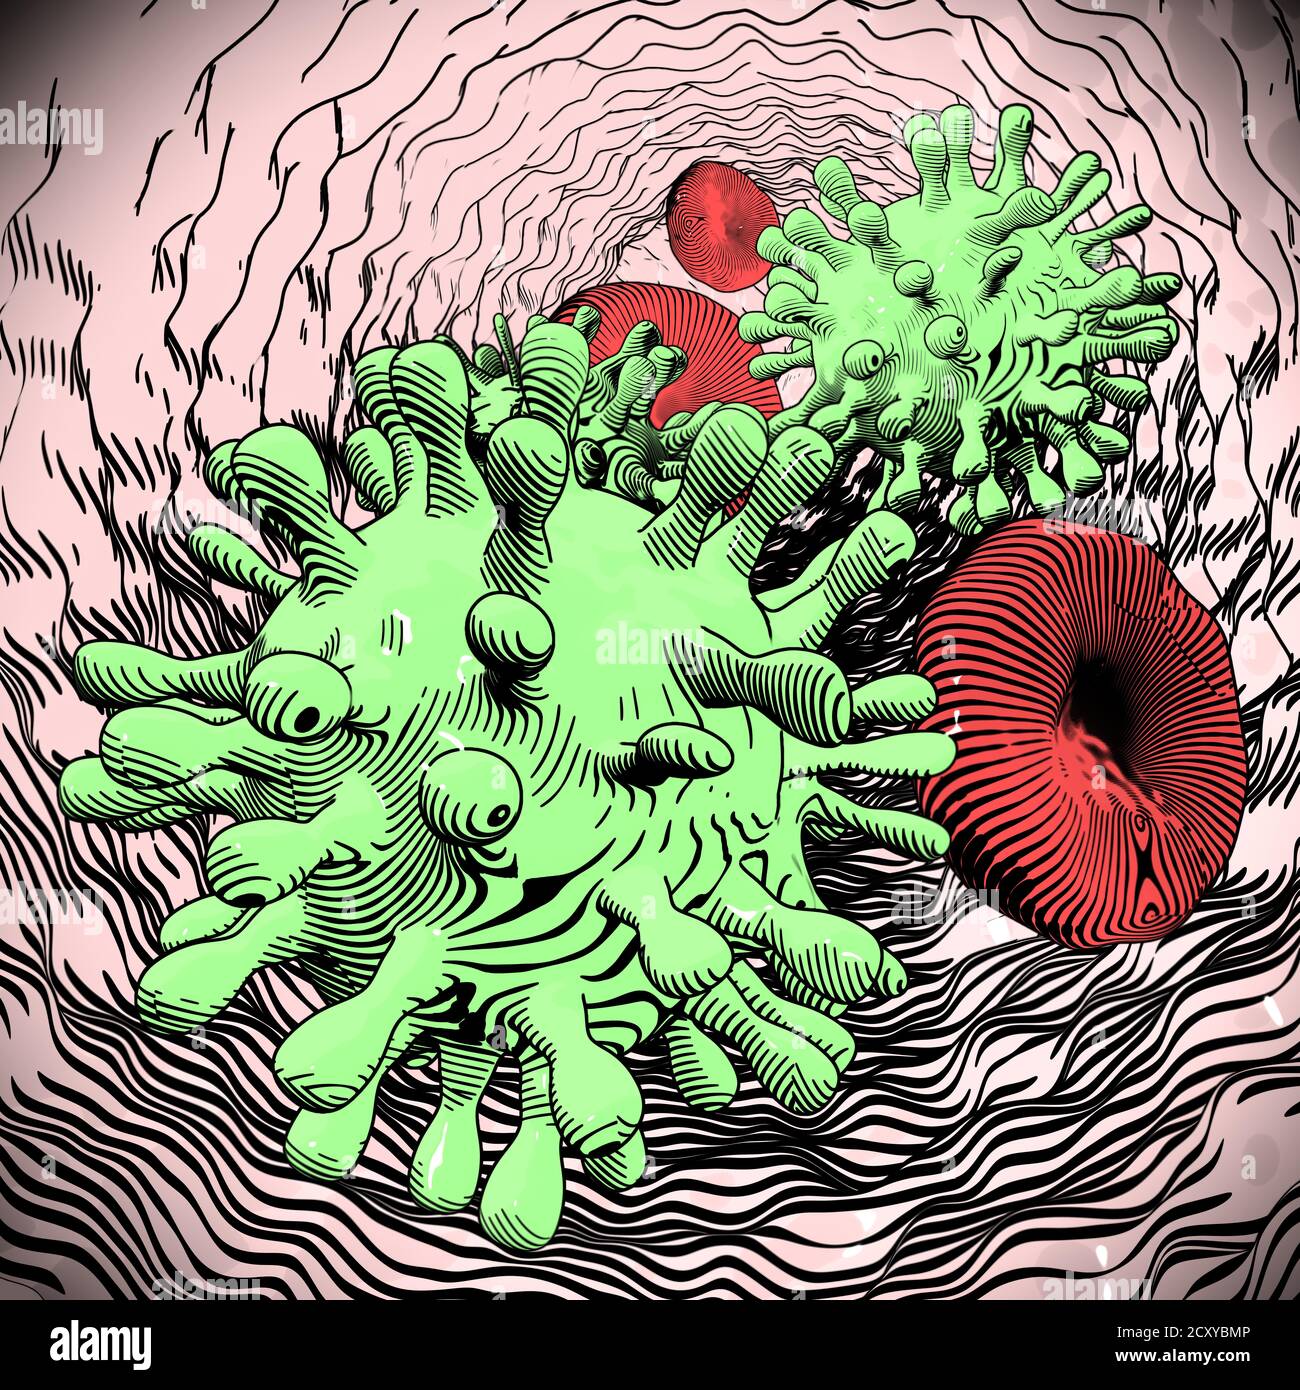 Abbildung zeigt Coronavirus und rote Bllod-Zellen vergeblich. Dieses Virus könnte gefährlich oder tödlich wie SARS sein. Stockfoto